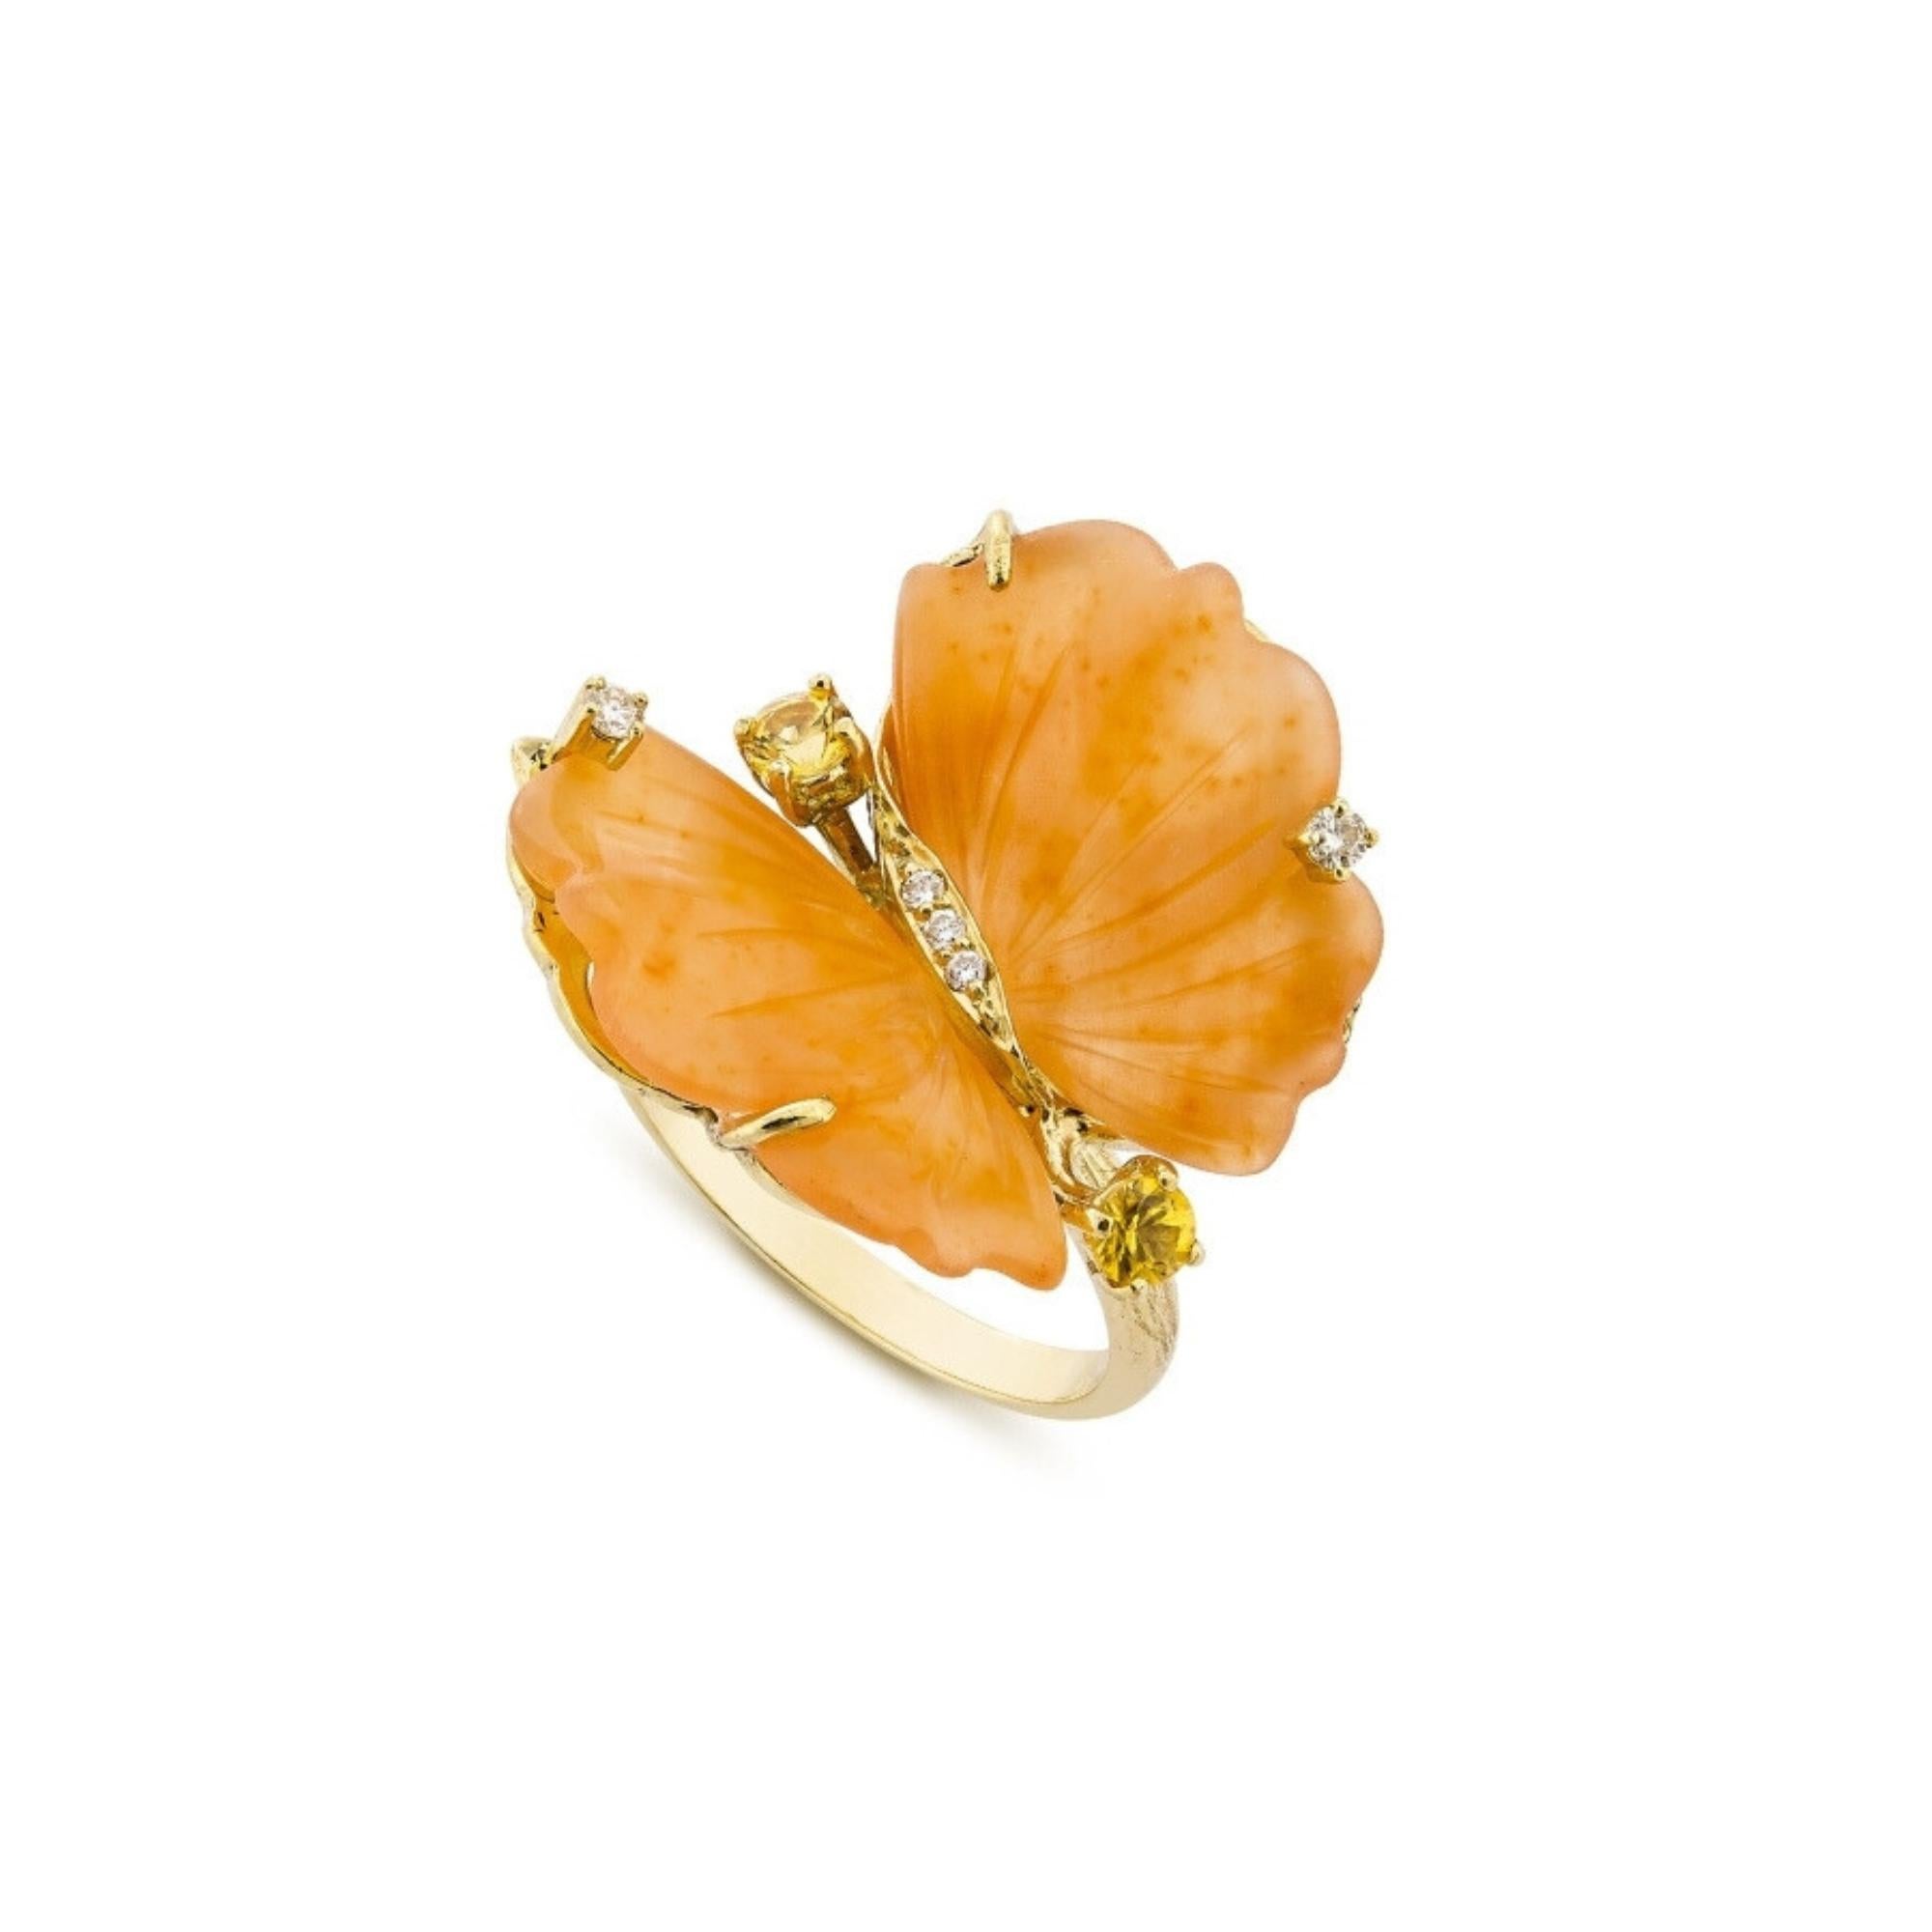 For Sale:  Bague Papillon en or jaune, quartzite pêche tourmaline et diamants - EU54 6